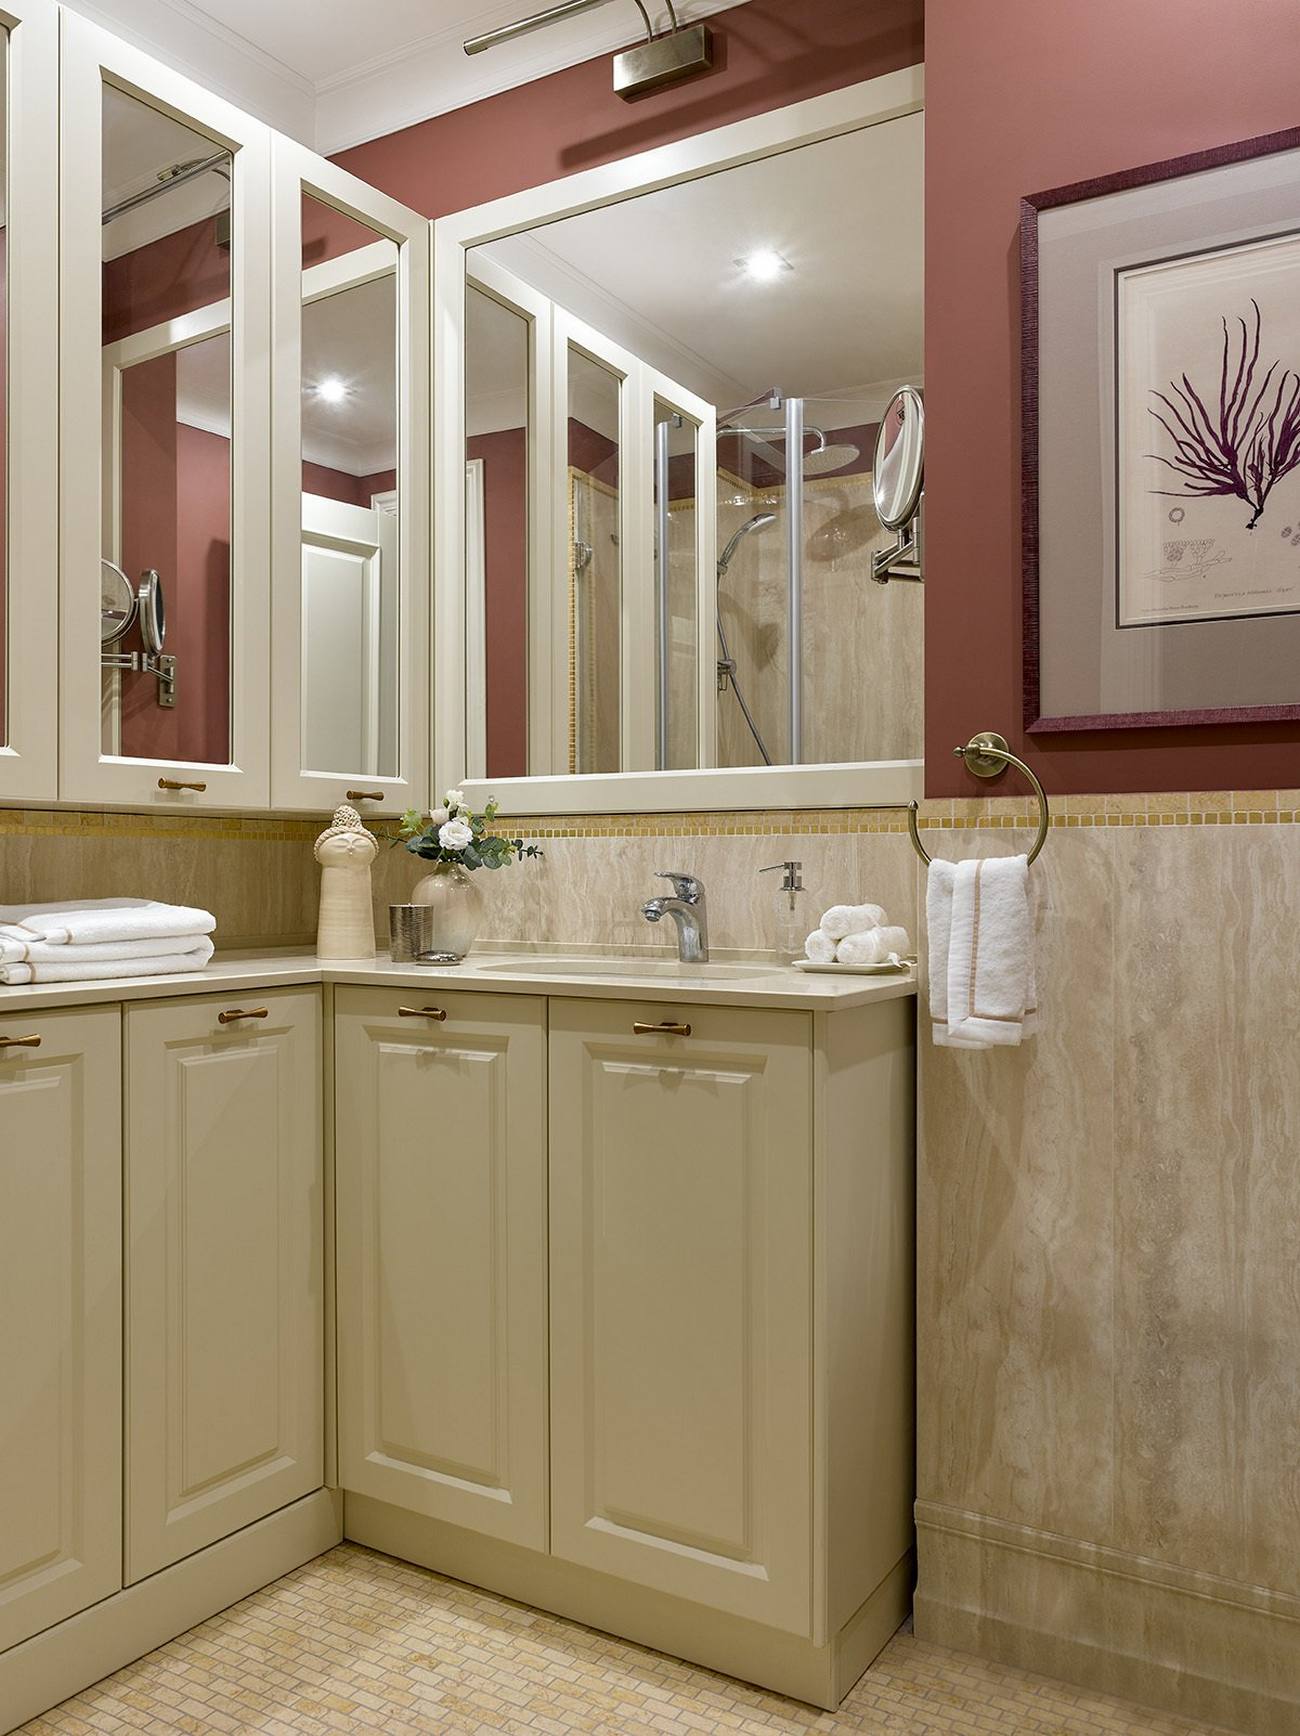 Phòng tắm với bảng màu khác biệt hoàn toàn, mang lại cảm giác ấm áp từ be nhạt cho đến màu đỏ mận ở nửa tường trên tạo điểm nhấn nổi bật. Những tấm gương lớn tiếp tục phát huy chức năng kỳ diệu của mình trong việc 'cơi nới' không gian nhỏ.